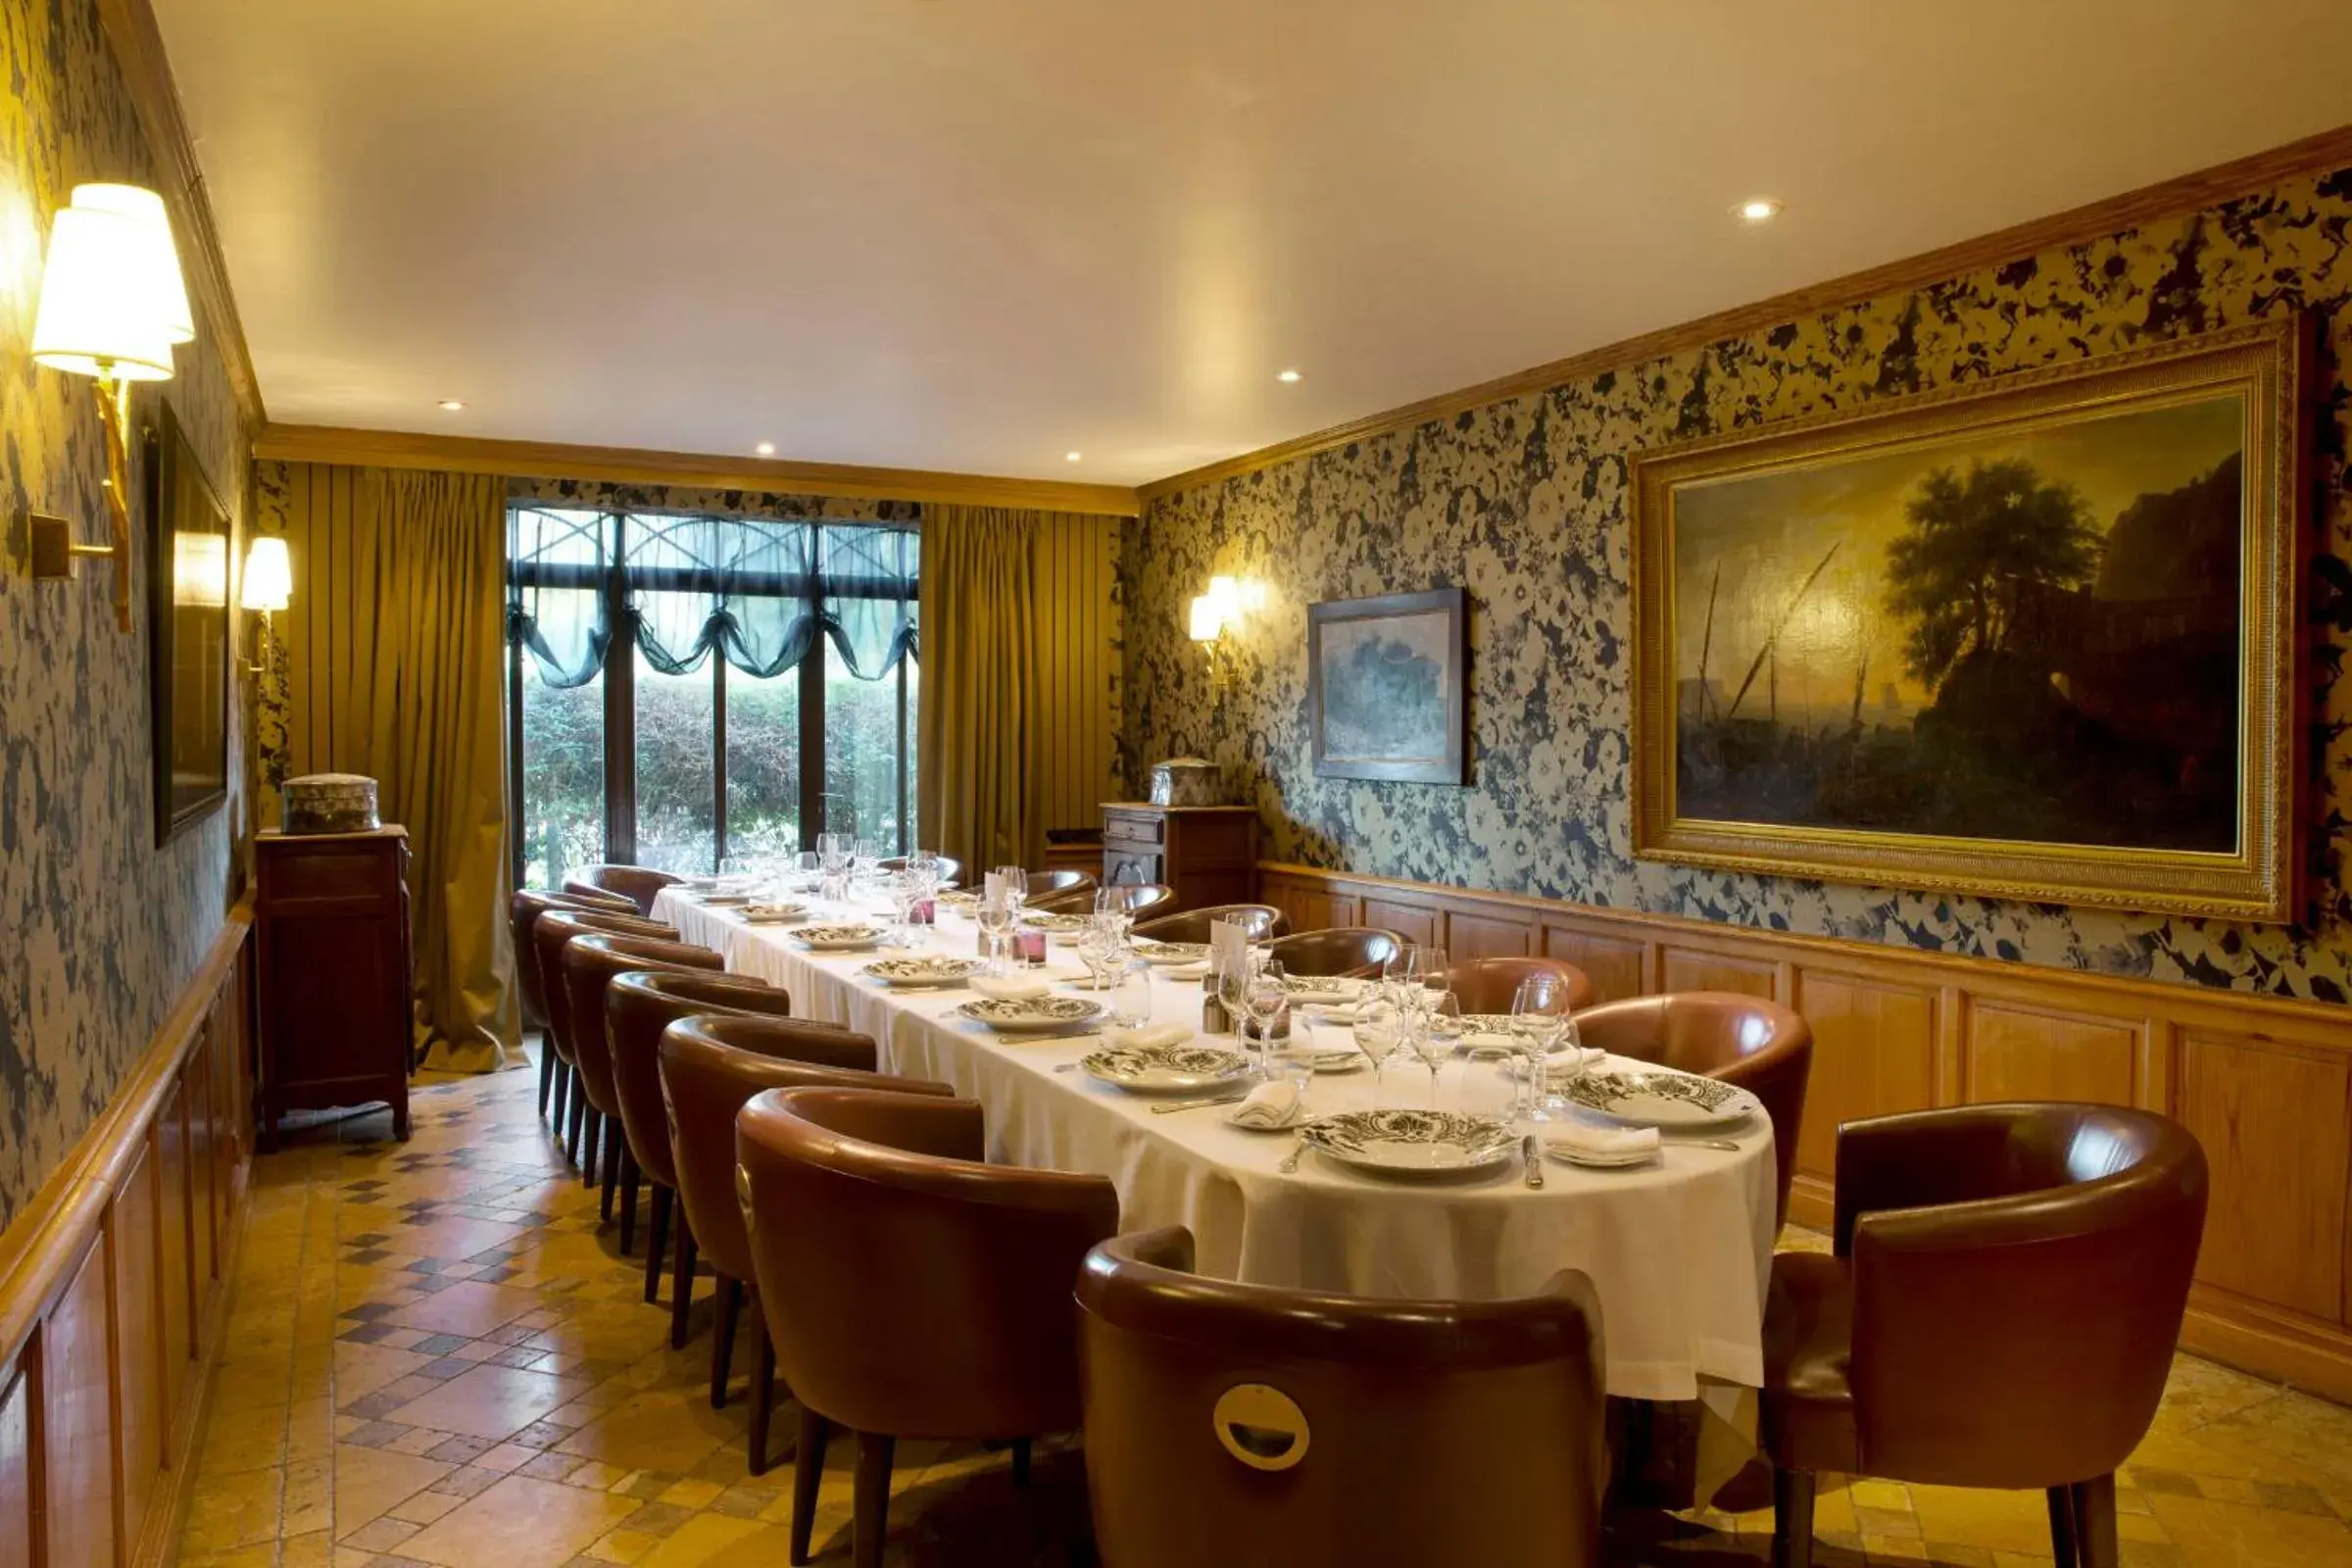 Banquet/Function facilities, Restaurant/Places to Eat in Cazaudehore, hôtel de charme au vert